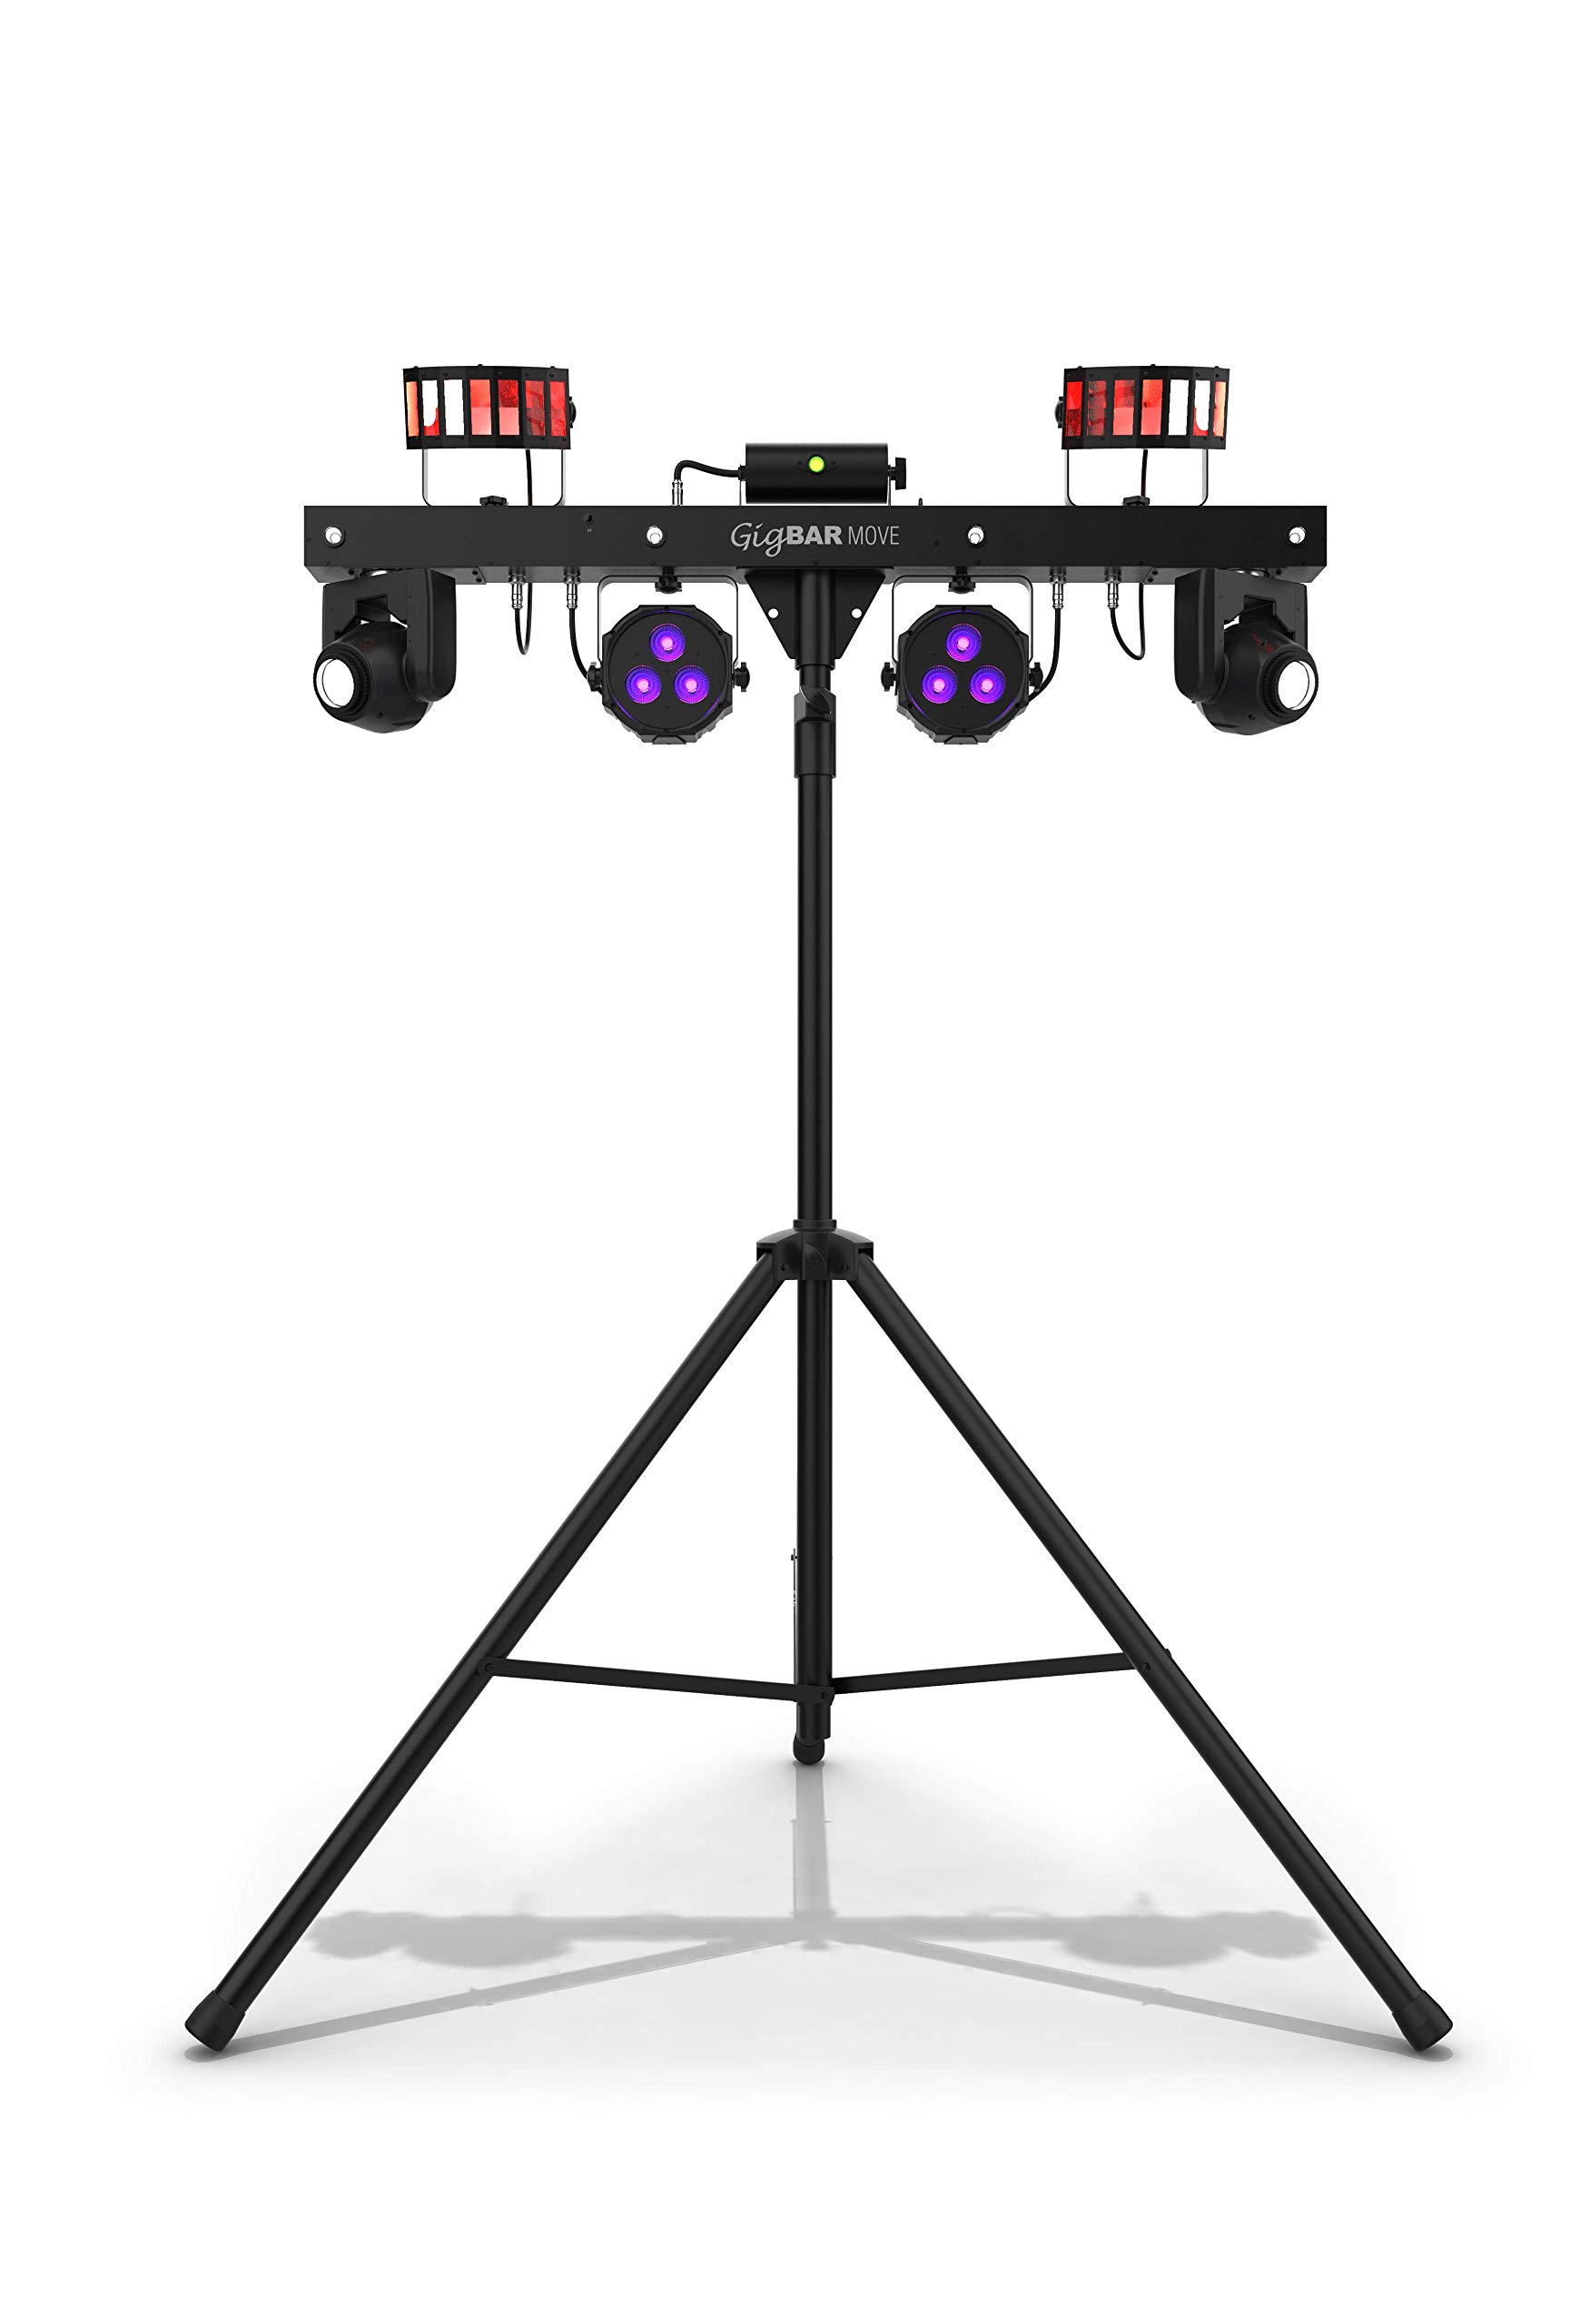 Chauvet نظام إضاءة DJ GigBAR MOVE 5 في 1 مع سماعات أذن لاسلكية